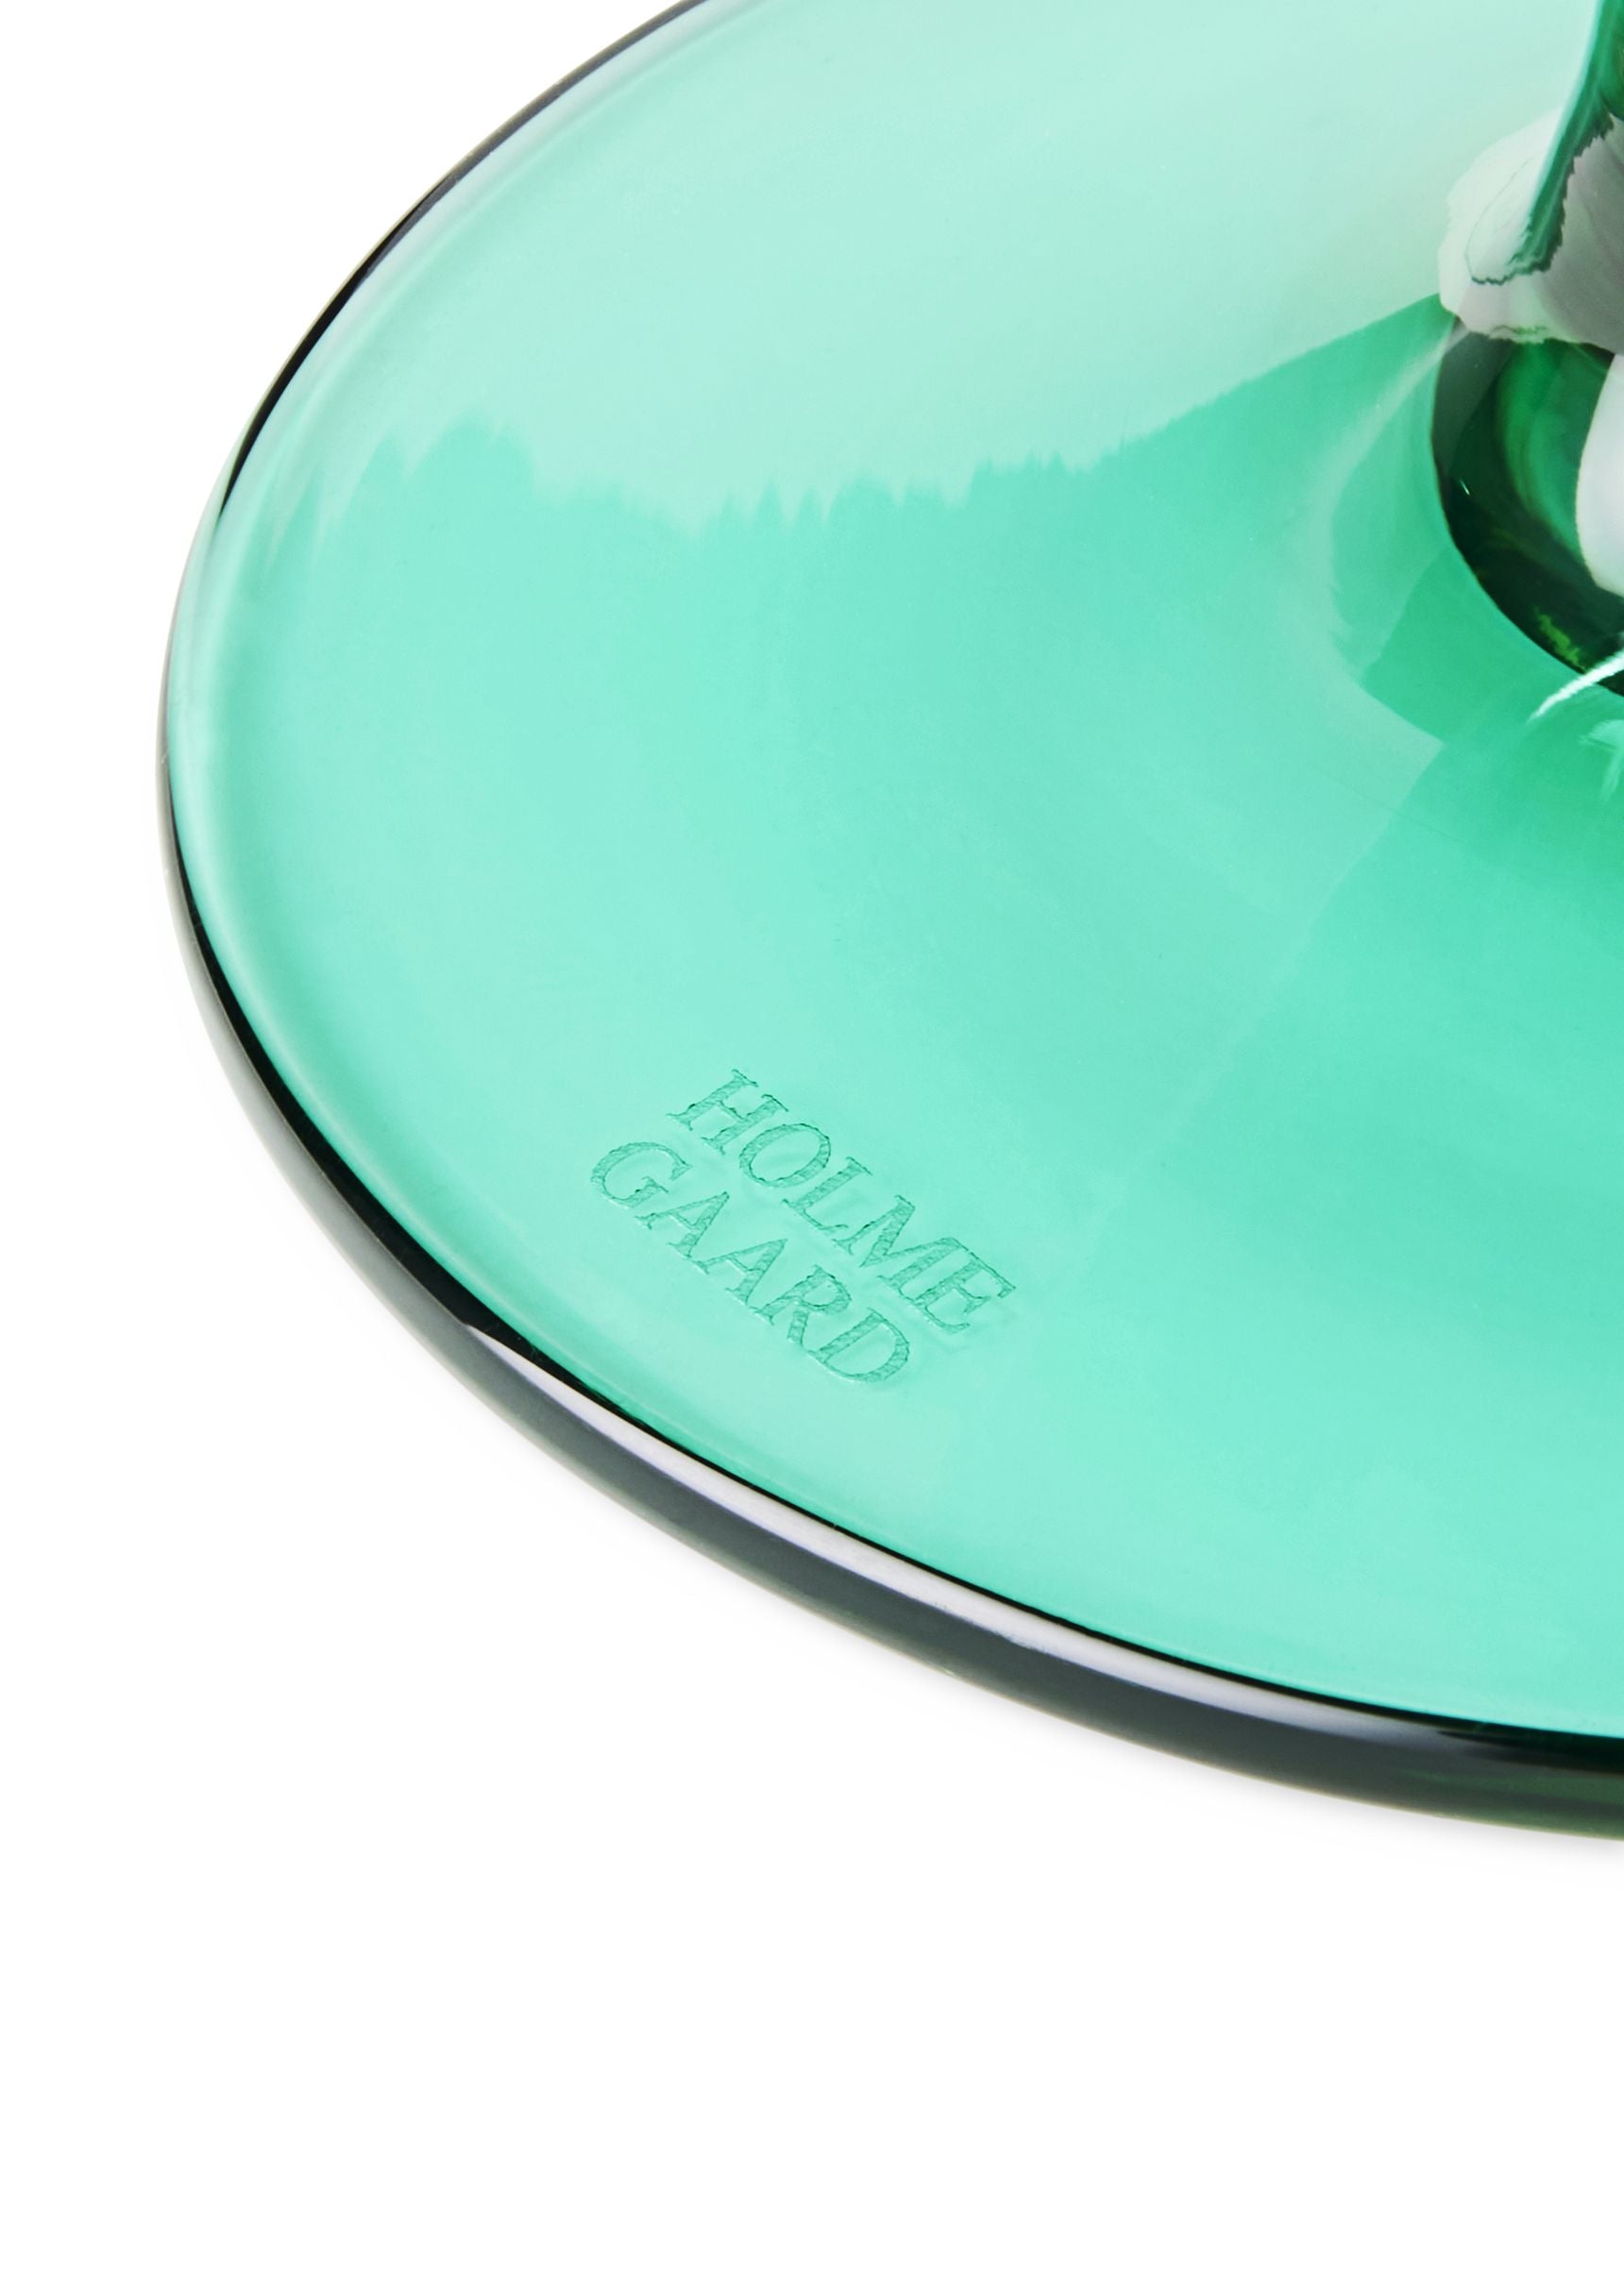 Holmegaard Flow Glass til fods 35 CL, Emerald Green